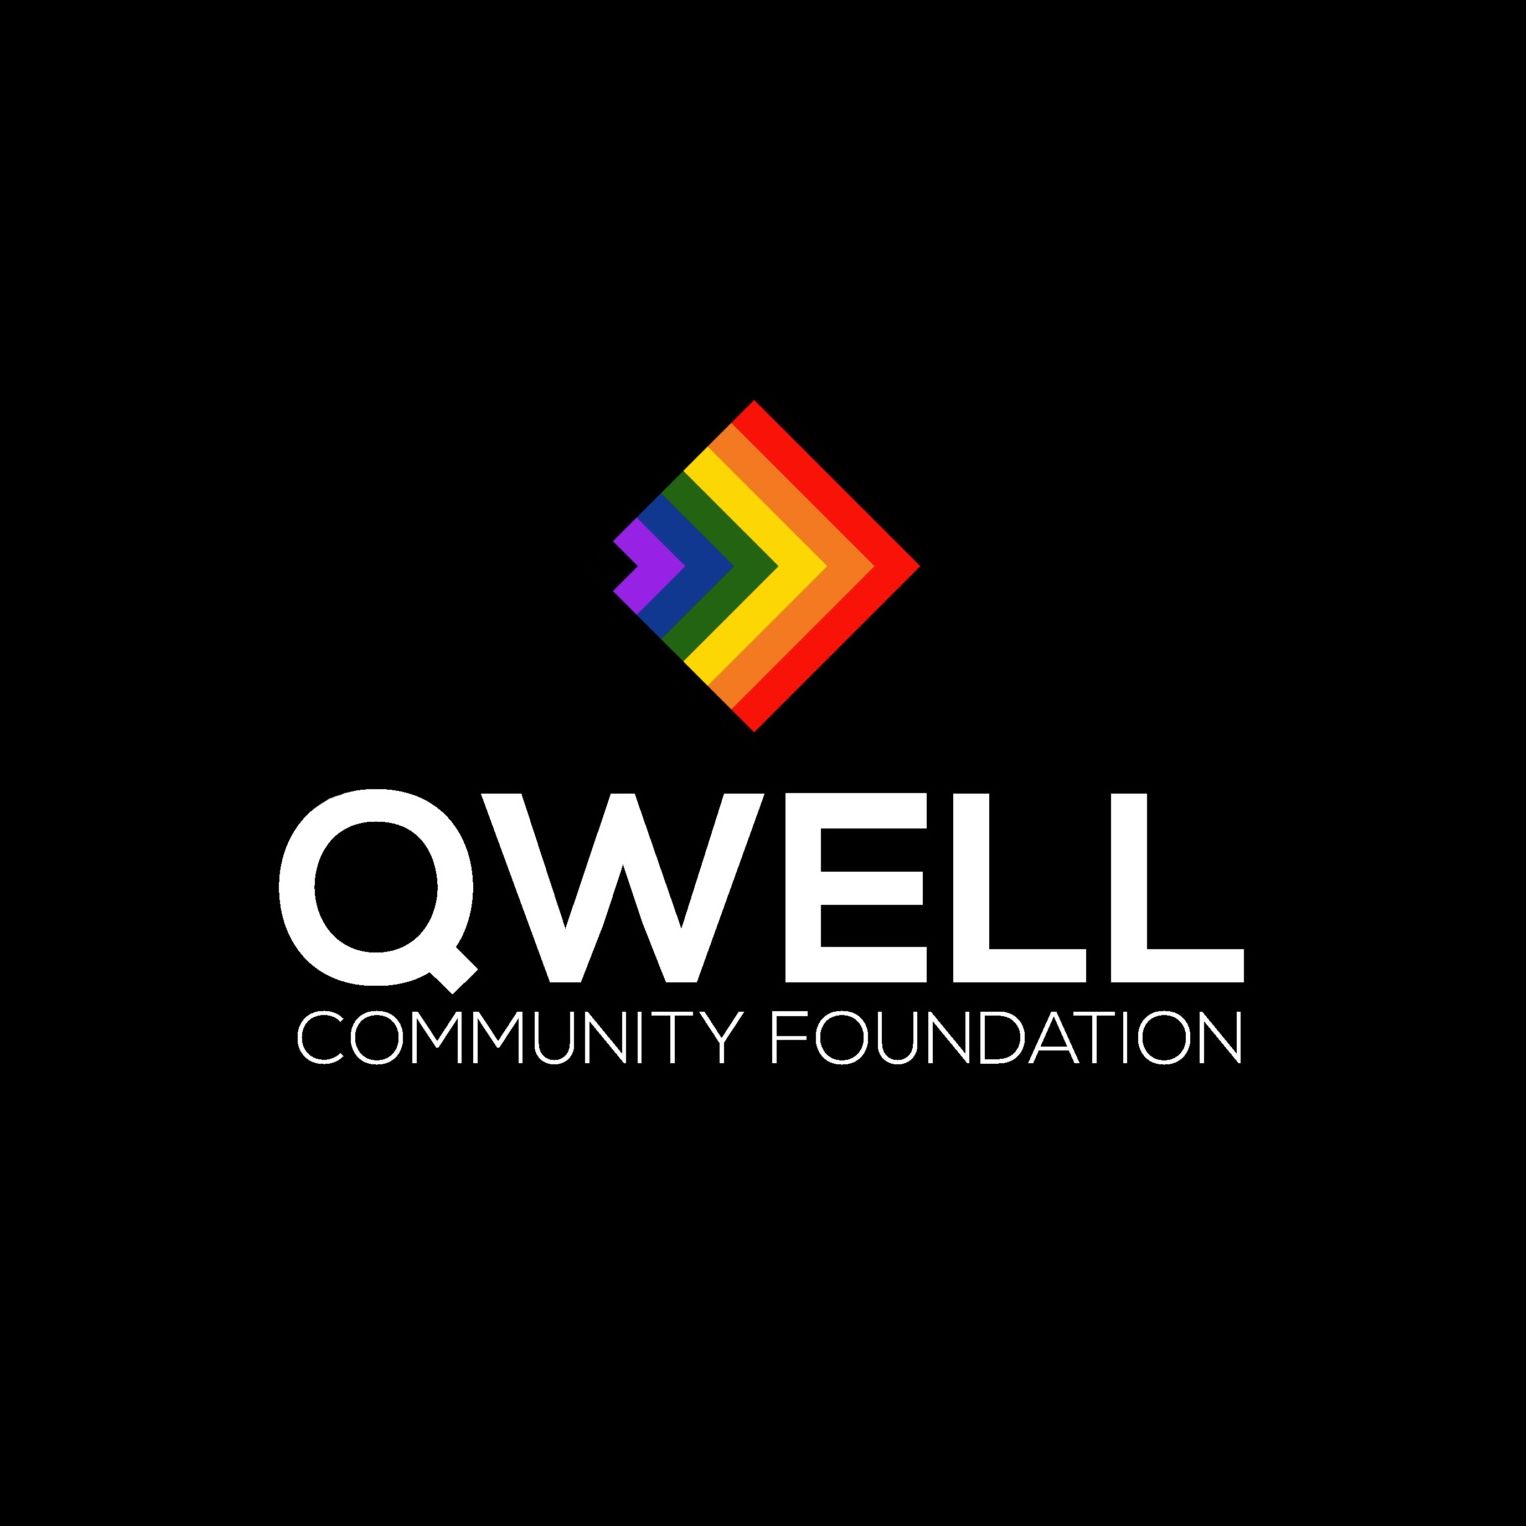 LGBTQ Organization in Houston Texas - QWELL Community Foundation